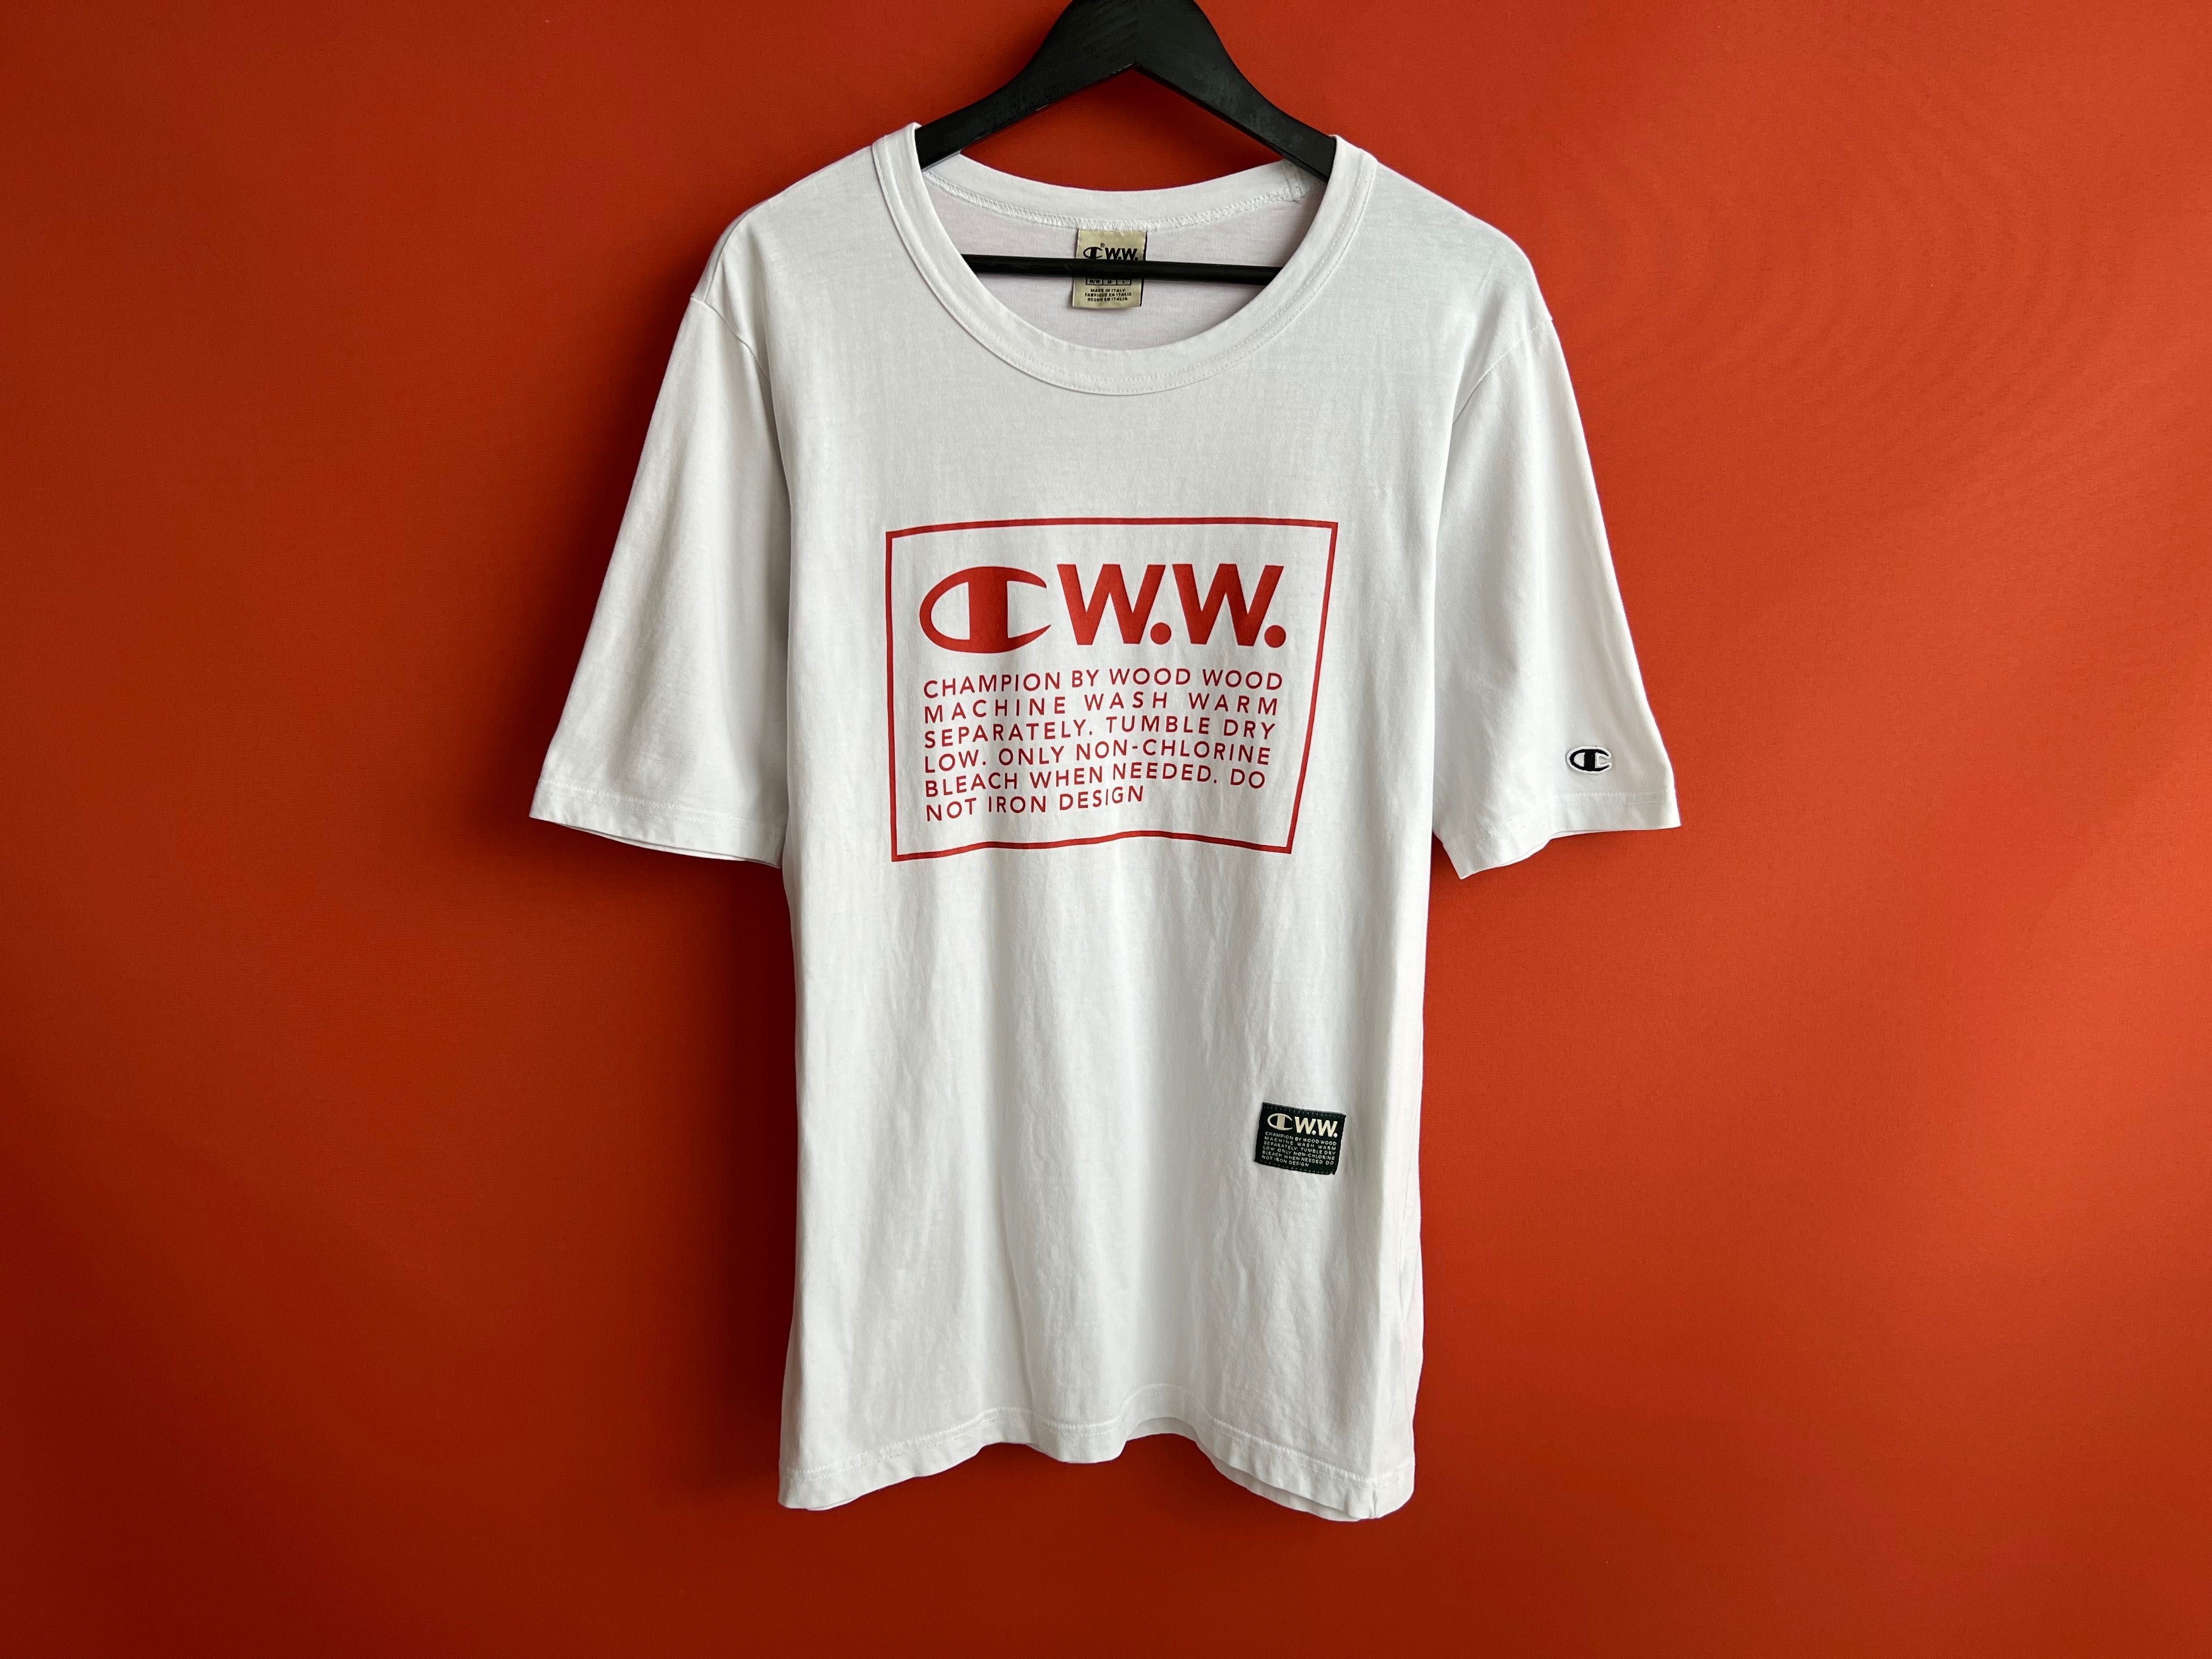 Champion W.W. Wood Wood оригинал мужская футболка размер M L Б У